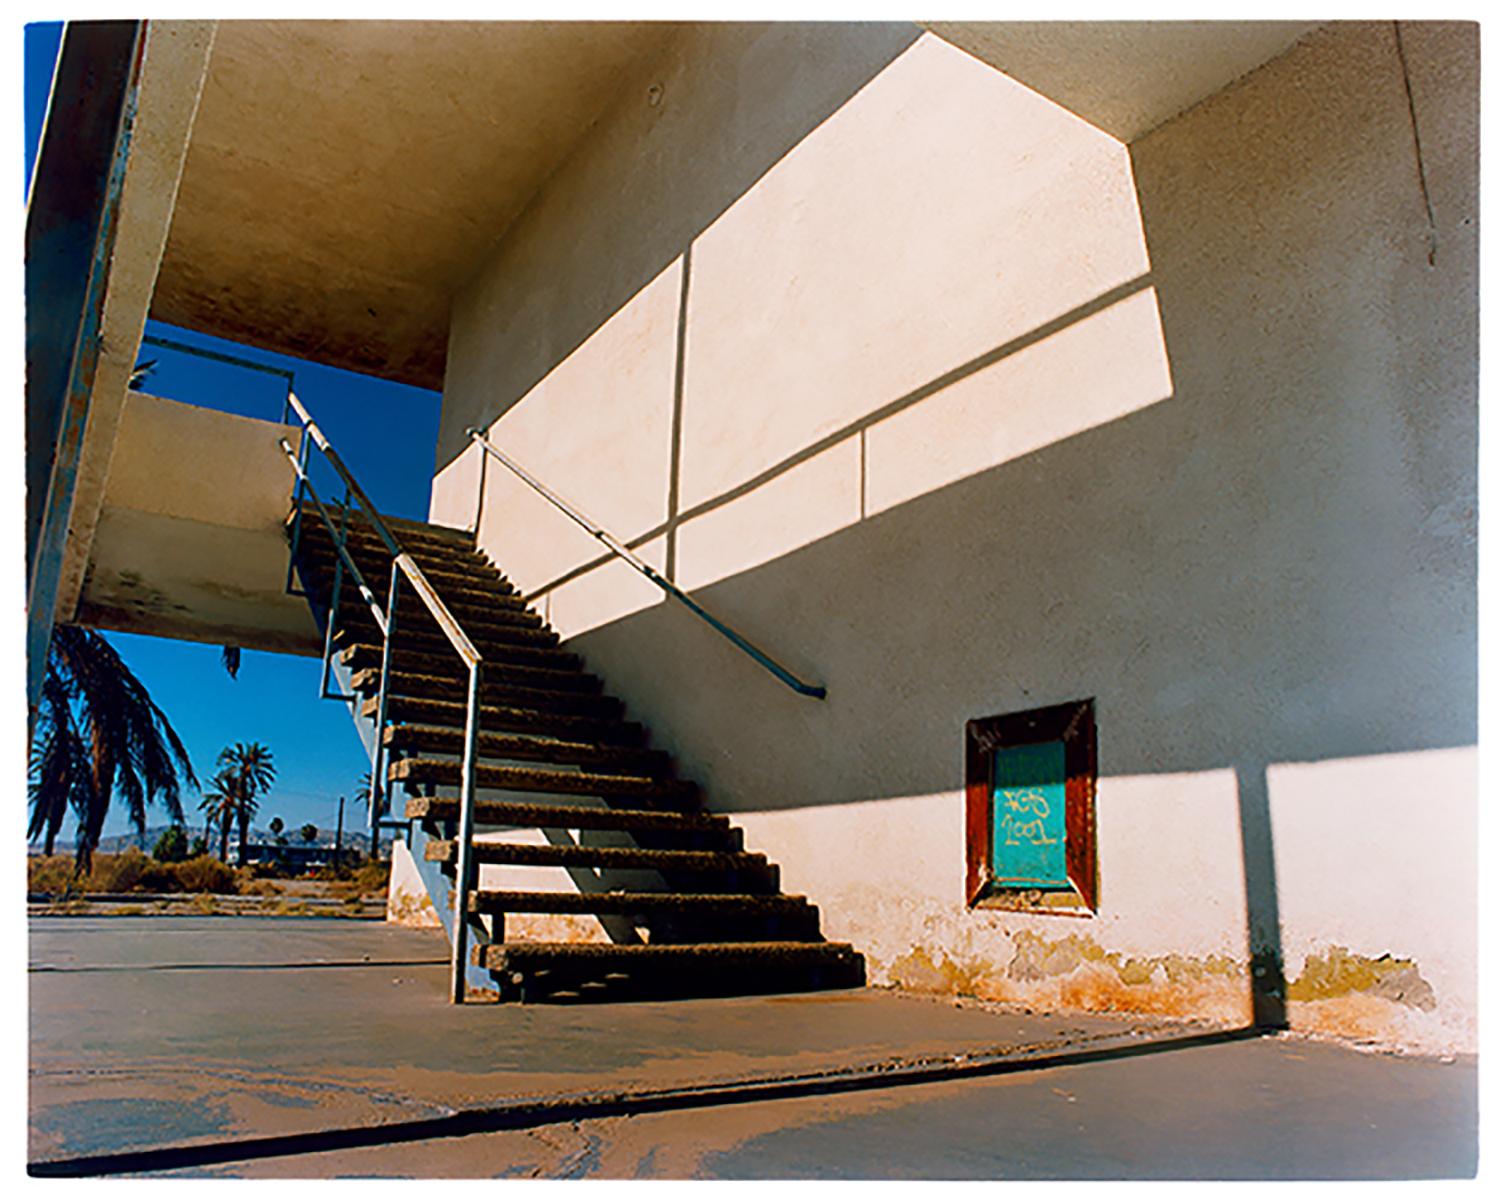 North Shore Motel Steps, Salton Sea, California - Architectural color photo